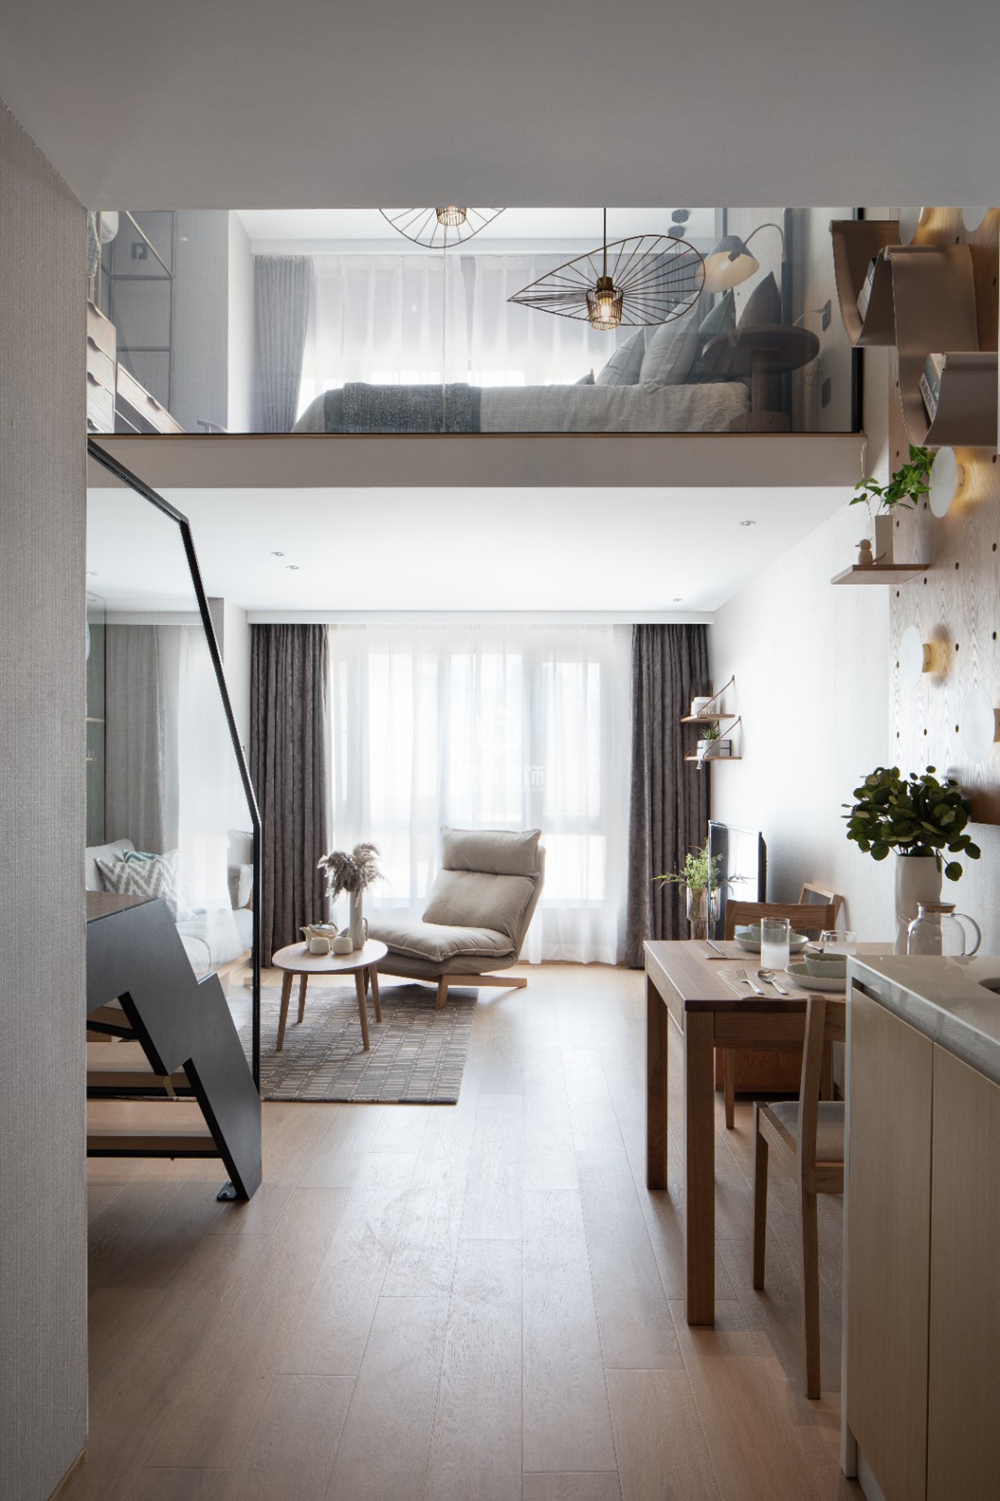 徐汇区徐汇柚米国际64平现代简约风格公寓装修效果图